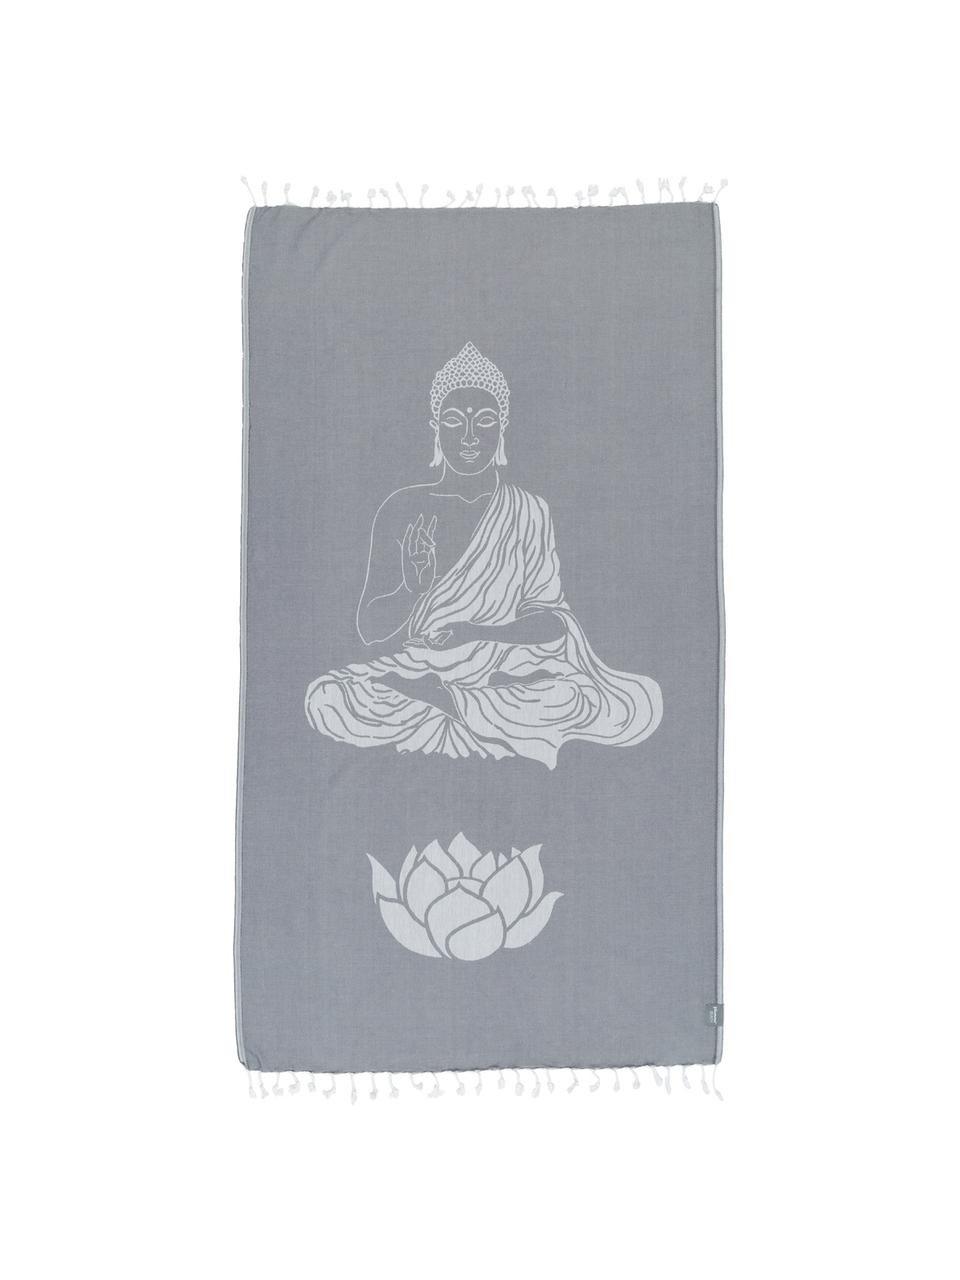 Hamamtuch Buddha, 100% Baumwolle, leichte Qualität, 180 g/m², Grau, Gebrochenes Weiß, 90 x 180 cm